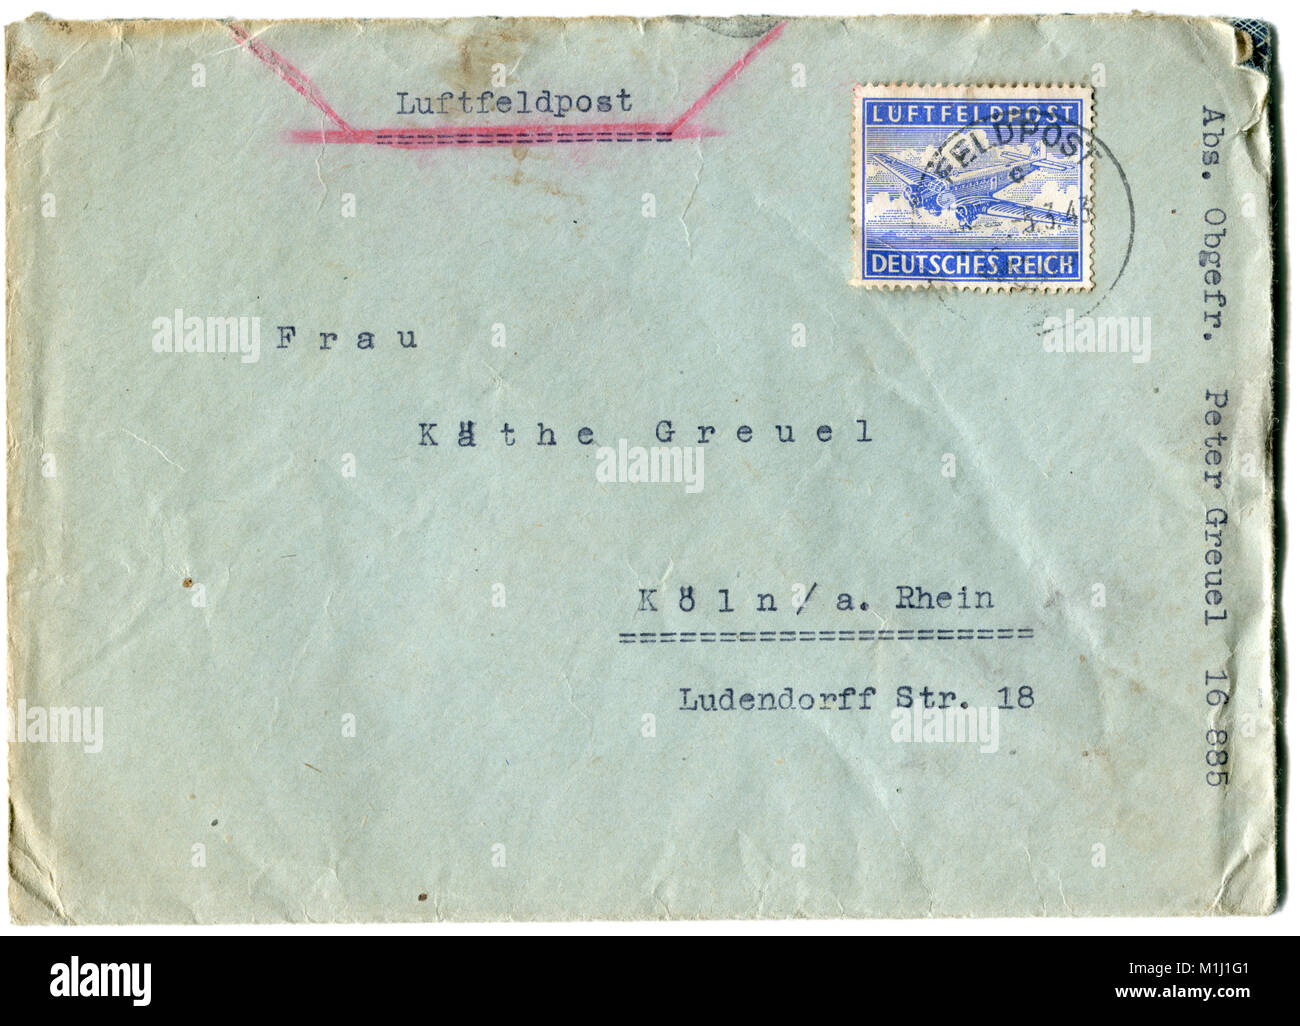 Ancienne enveloppe postale allemande, lettre et timbres, cachet, imprimé sur une machine à écrire. La seconde guerre mondiale. Le Troisième Reich. L'Allemagne. Domaine de la poste aérienne. 1943 Banque D'Images